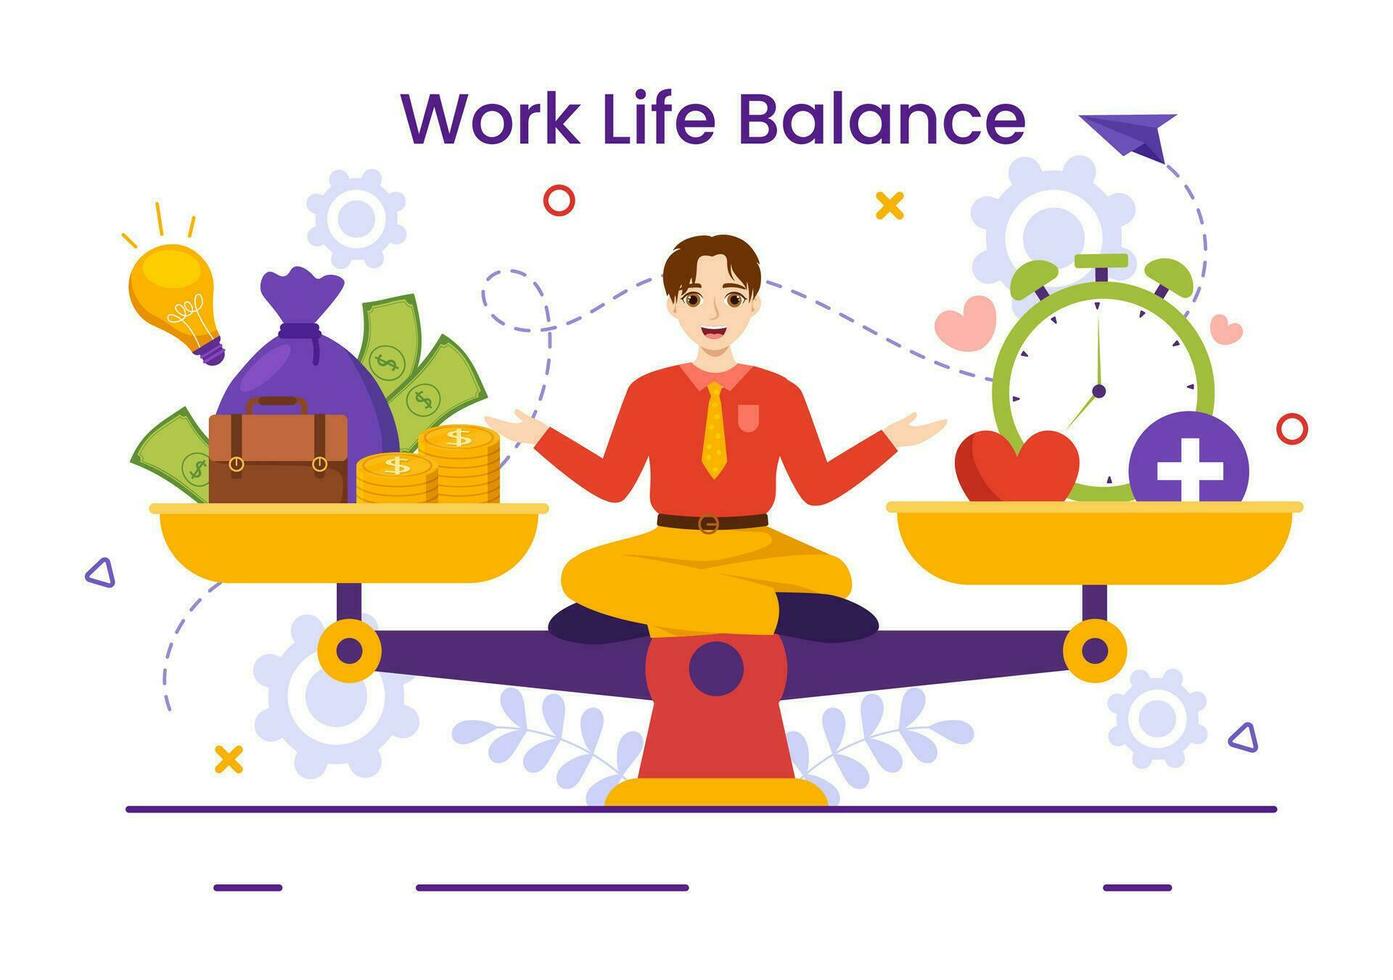 opera vita equilibrio vettore illustrazione di persona equilibratura con lavoro e famiglia o tempo libero attività nel multitasking piatto cartone animato mano disegnato modelli